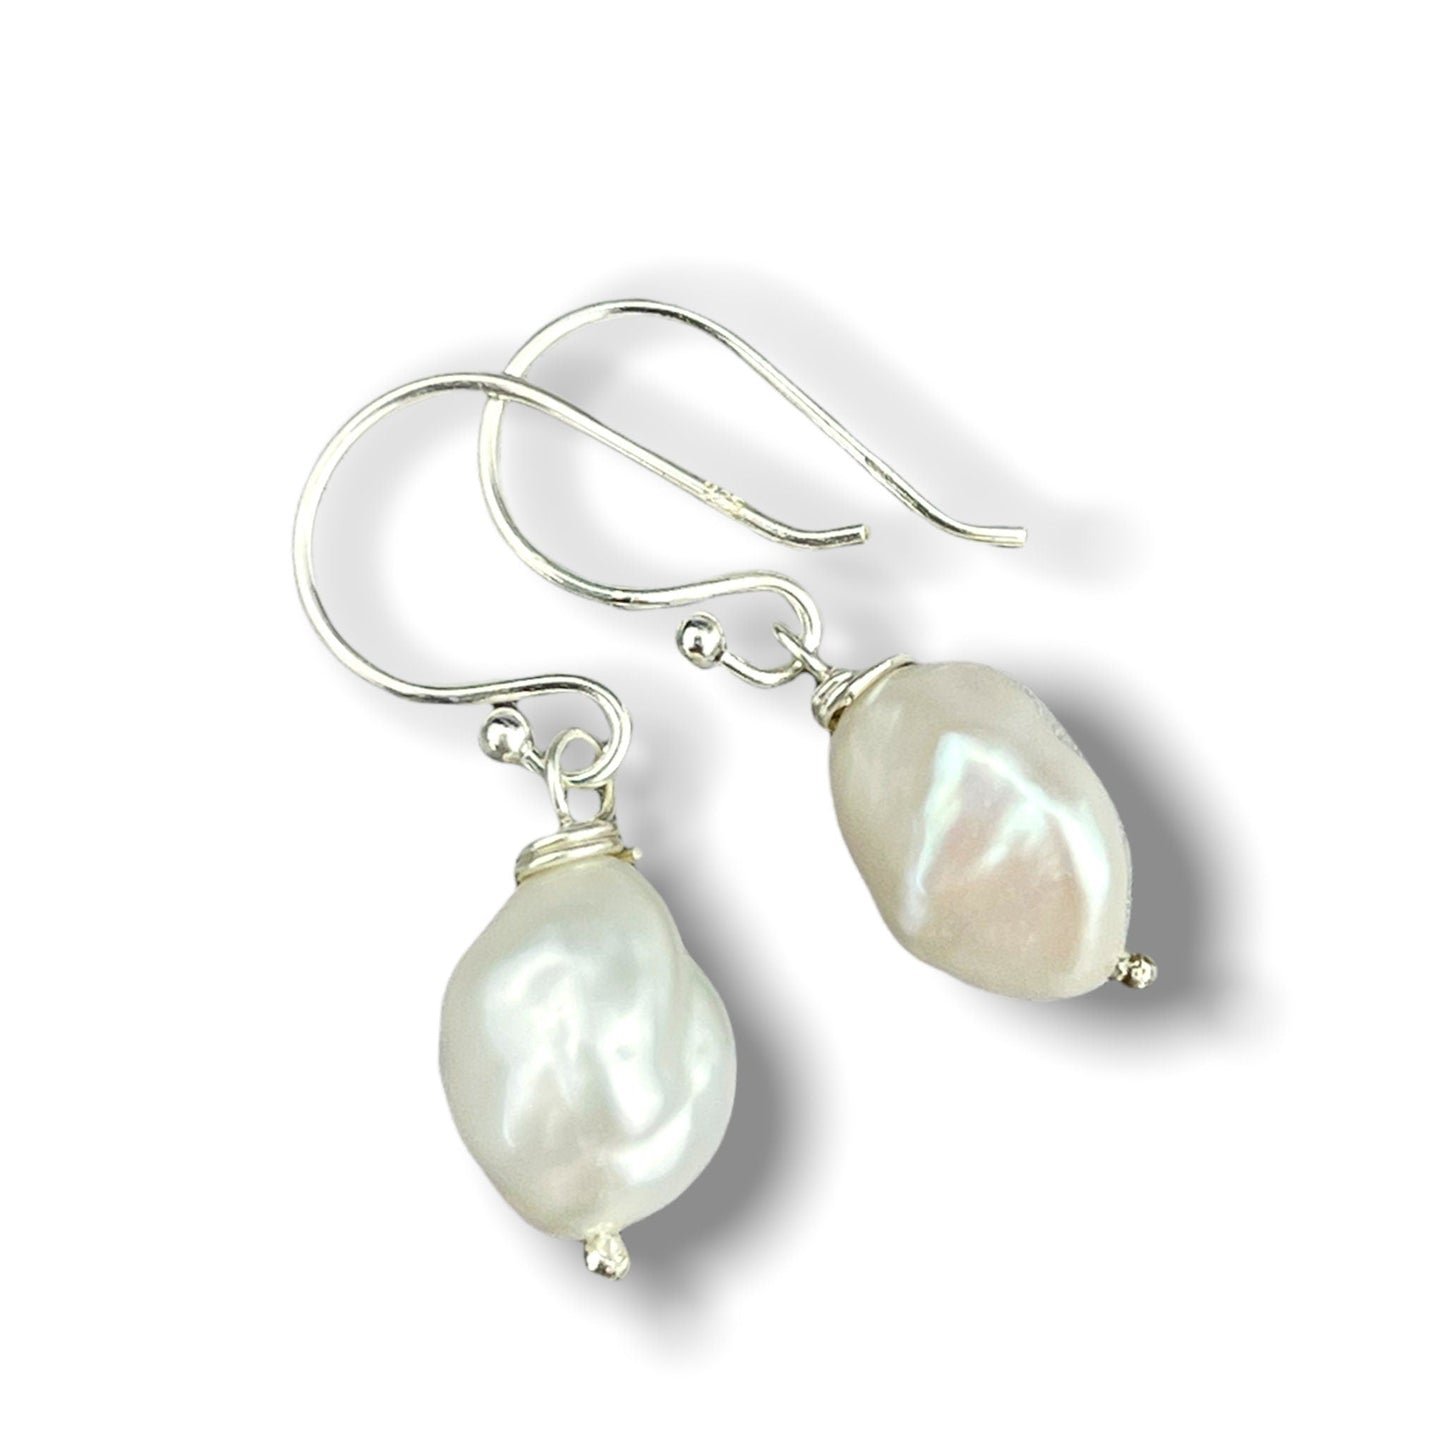 Baroque freshwater pearl earrings - beads drop earrings - Ear925-132